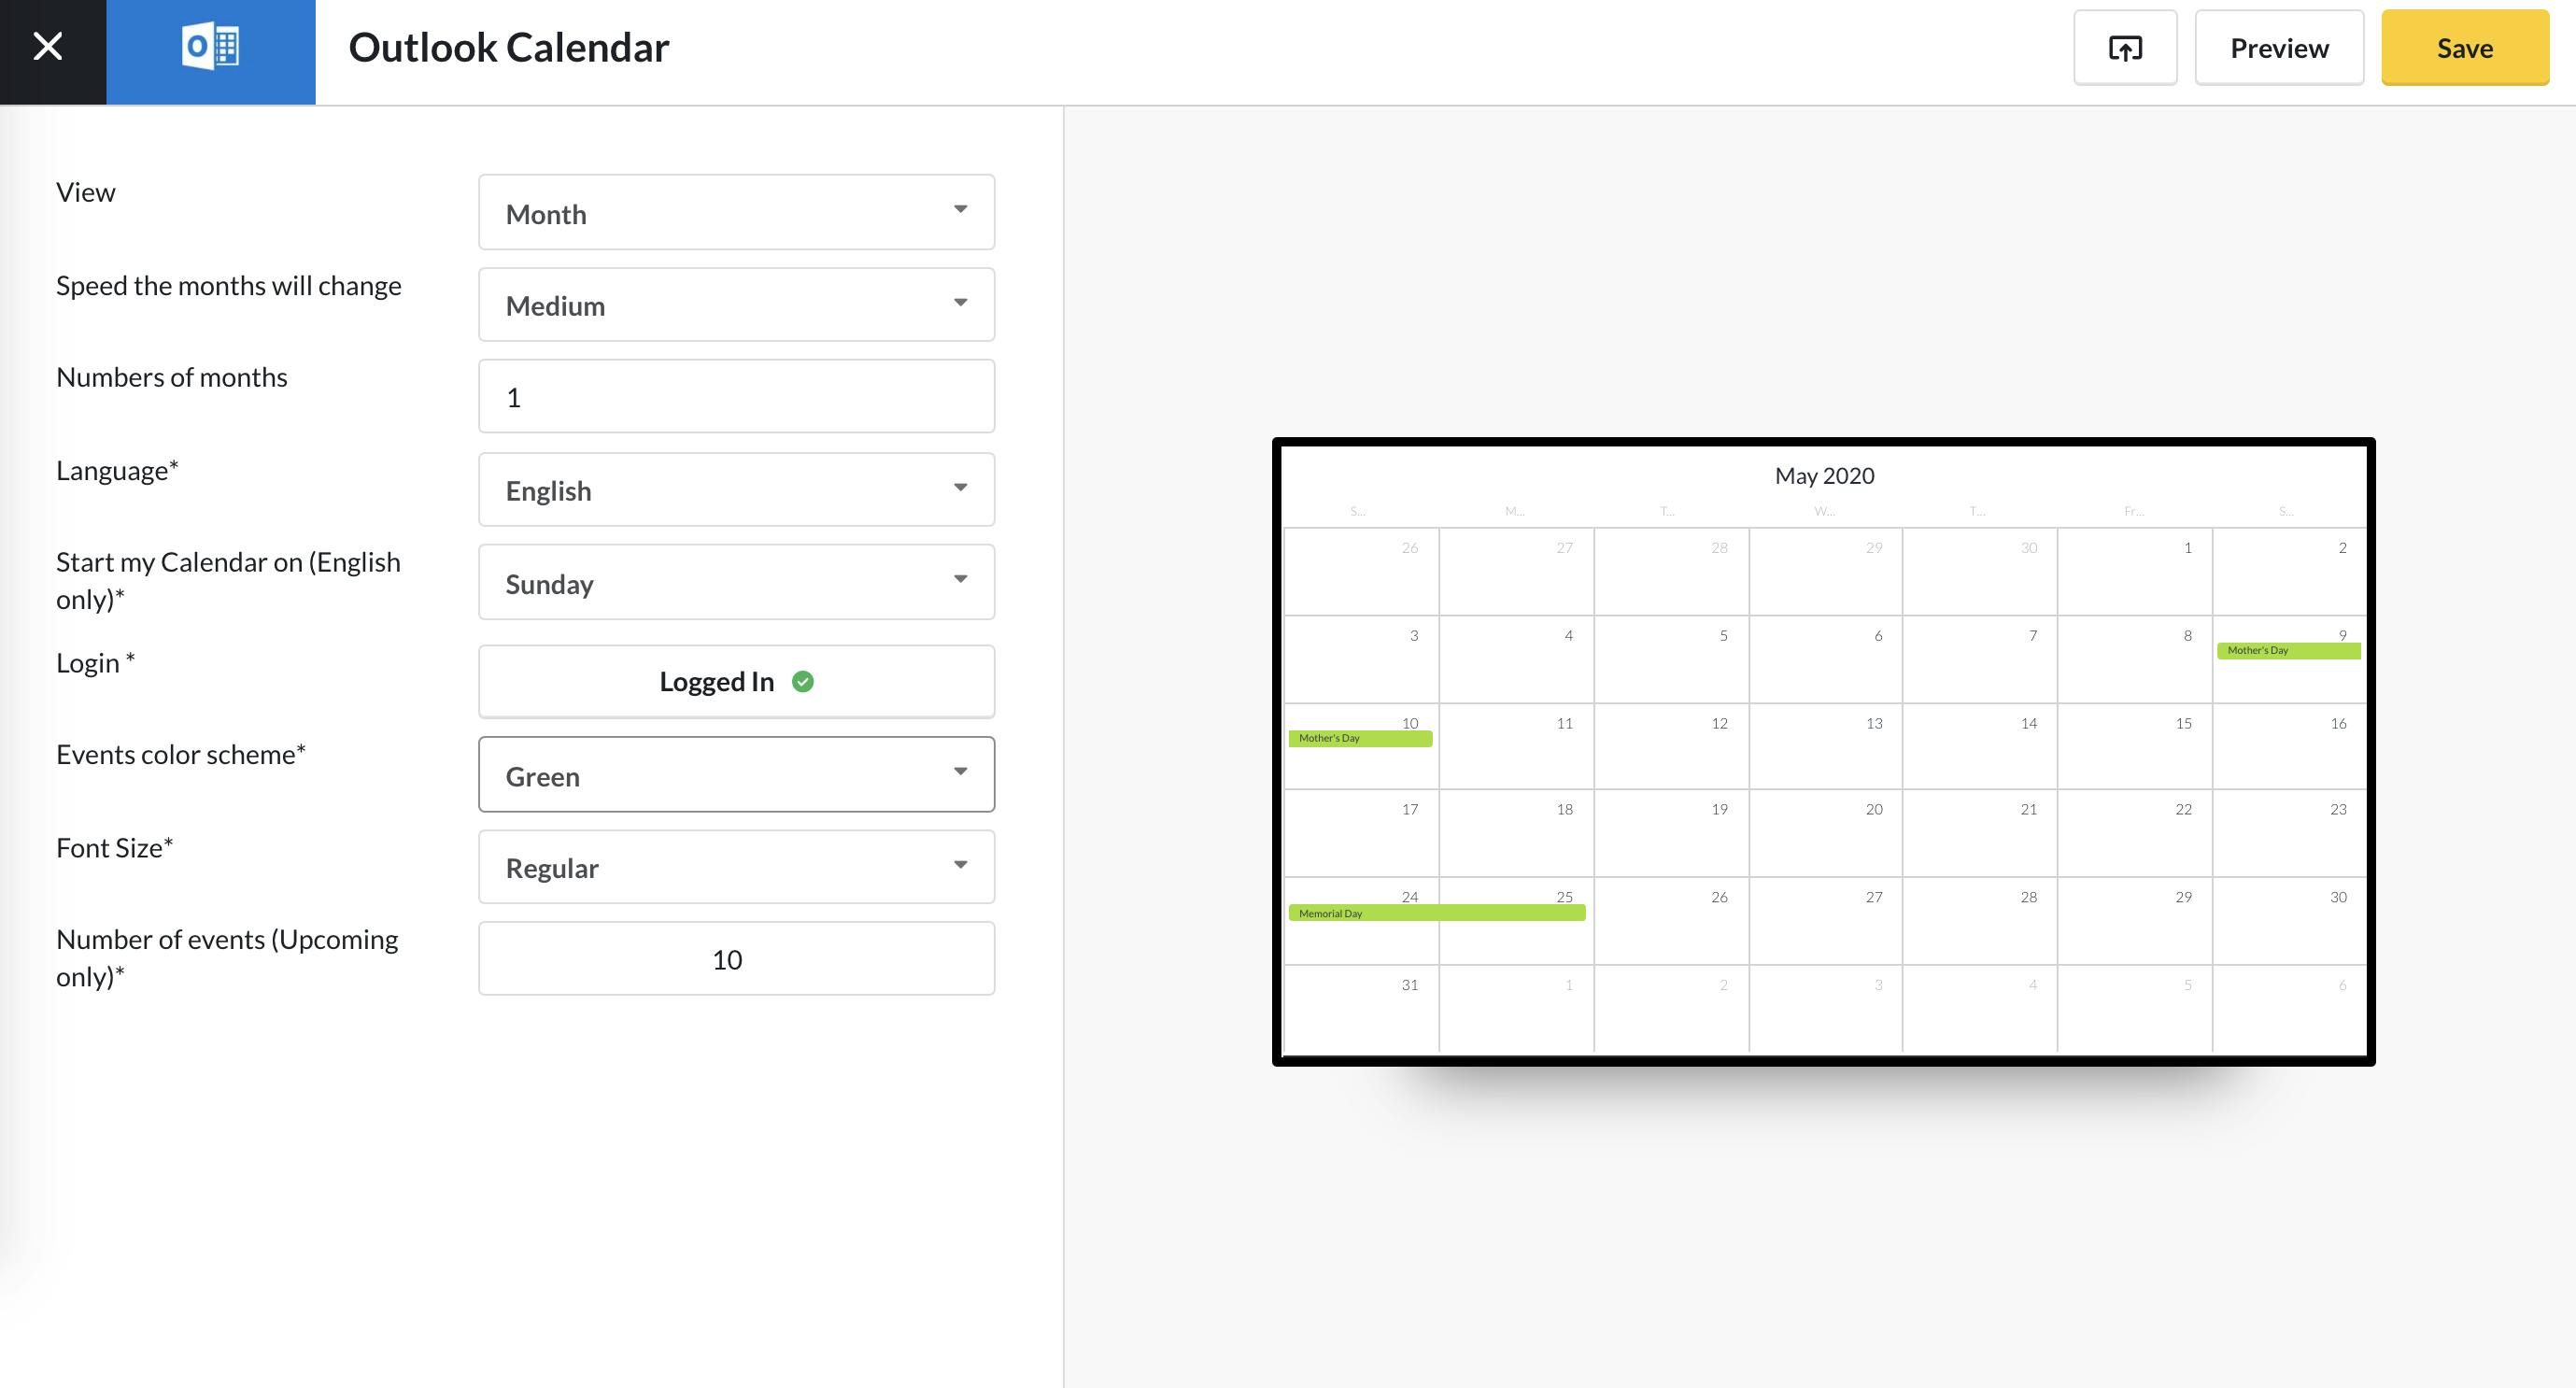 ScreenCloud Outlook Calendar App Guide ScreenCloud